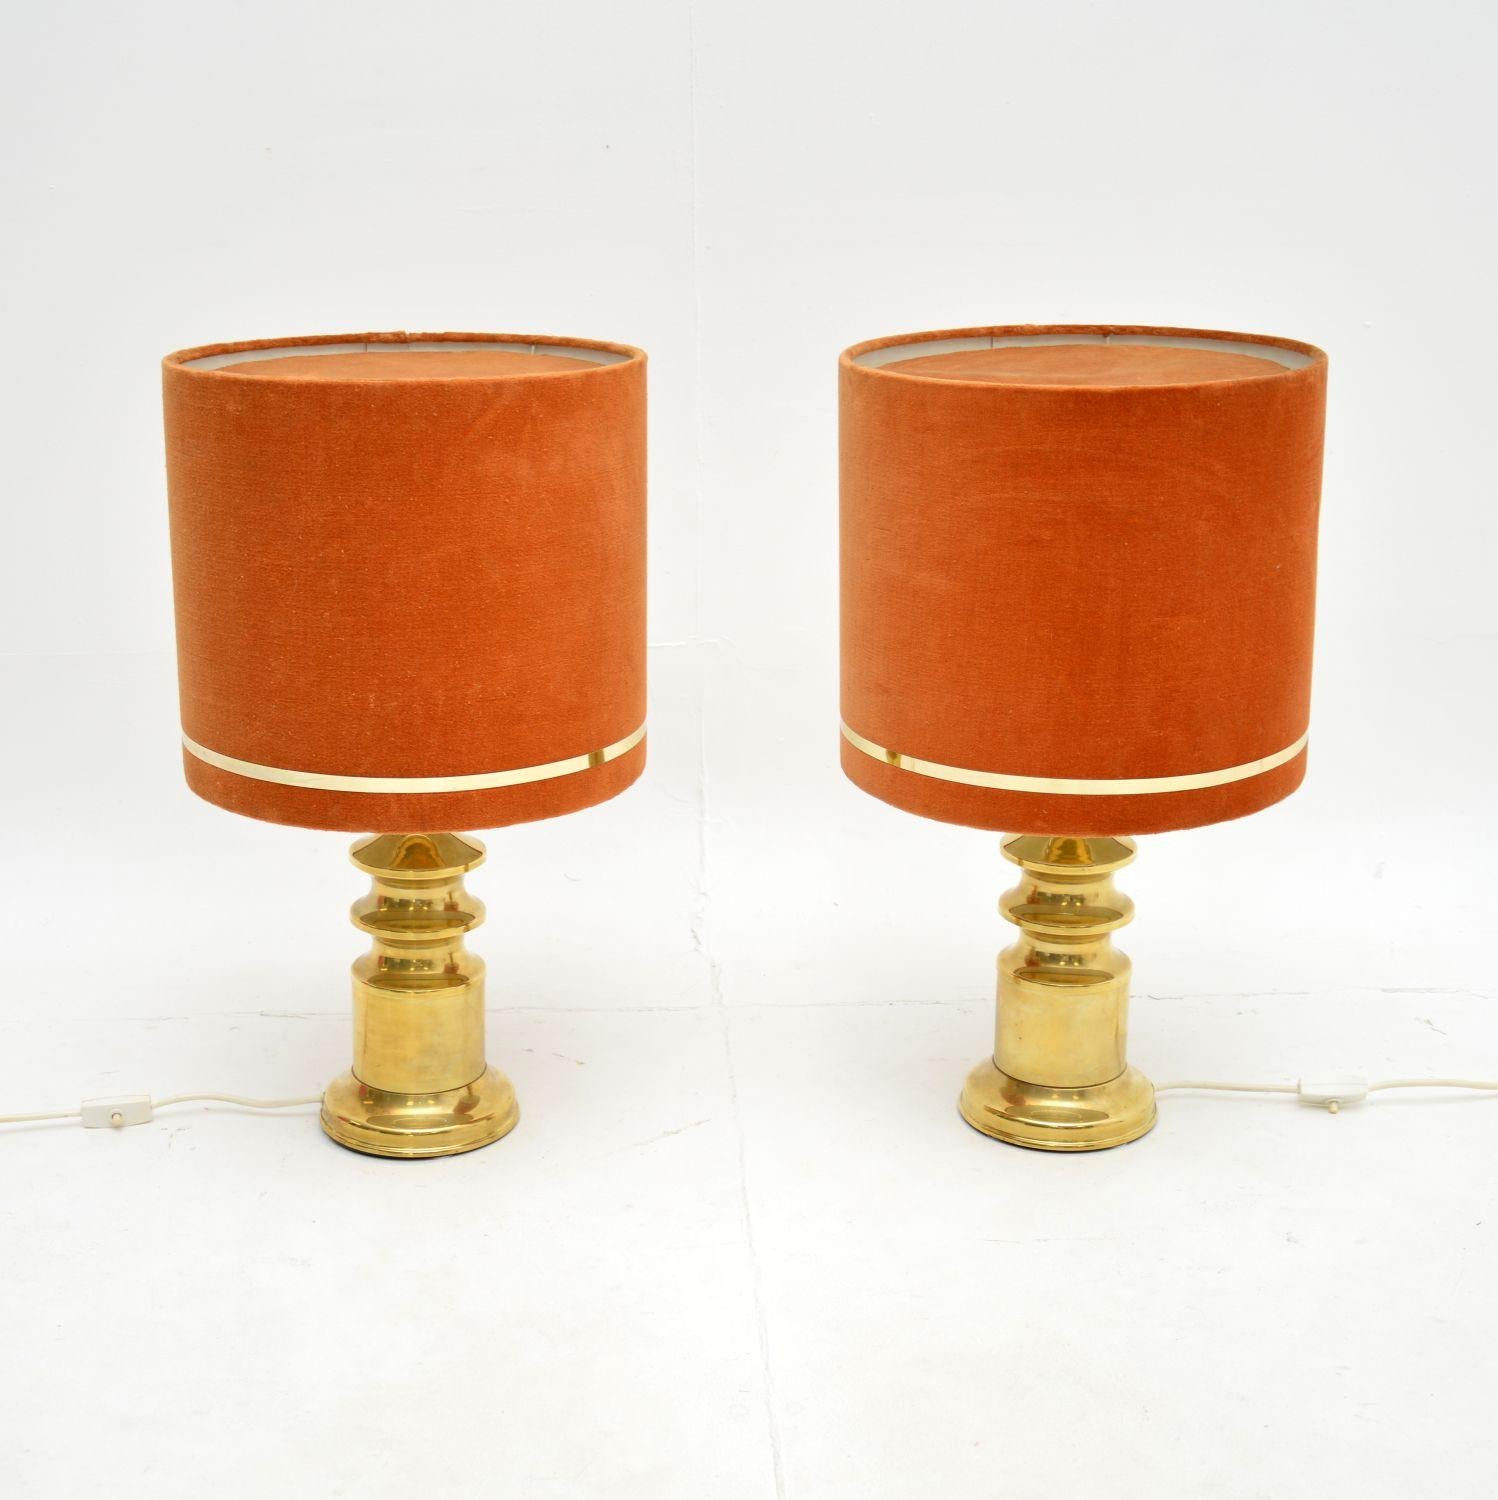 Ein schönes Paar Vintage-Tischlampen aus Messing mit Samtschirmen. Sie wurden in Frankreich hergestellt und stammen aus den 1970er Jahren.

Die Qualität ist hervorragend, die Lampenständer aus massivem Messing sind wunderschön verarbeitet und haben